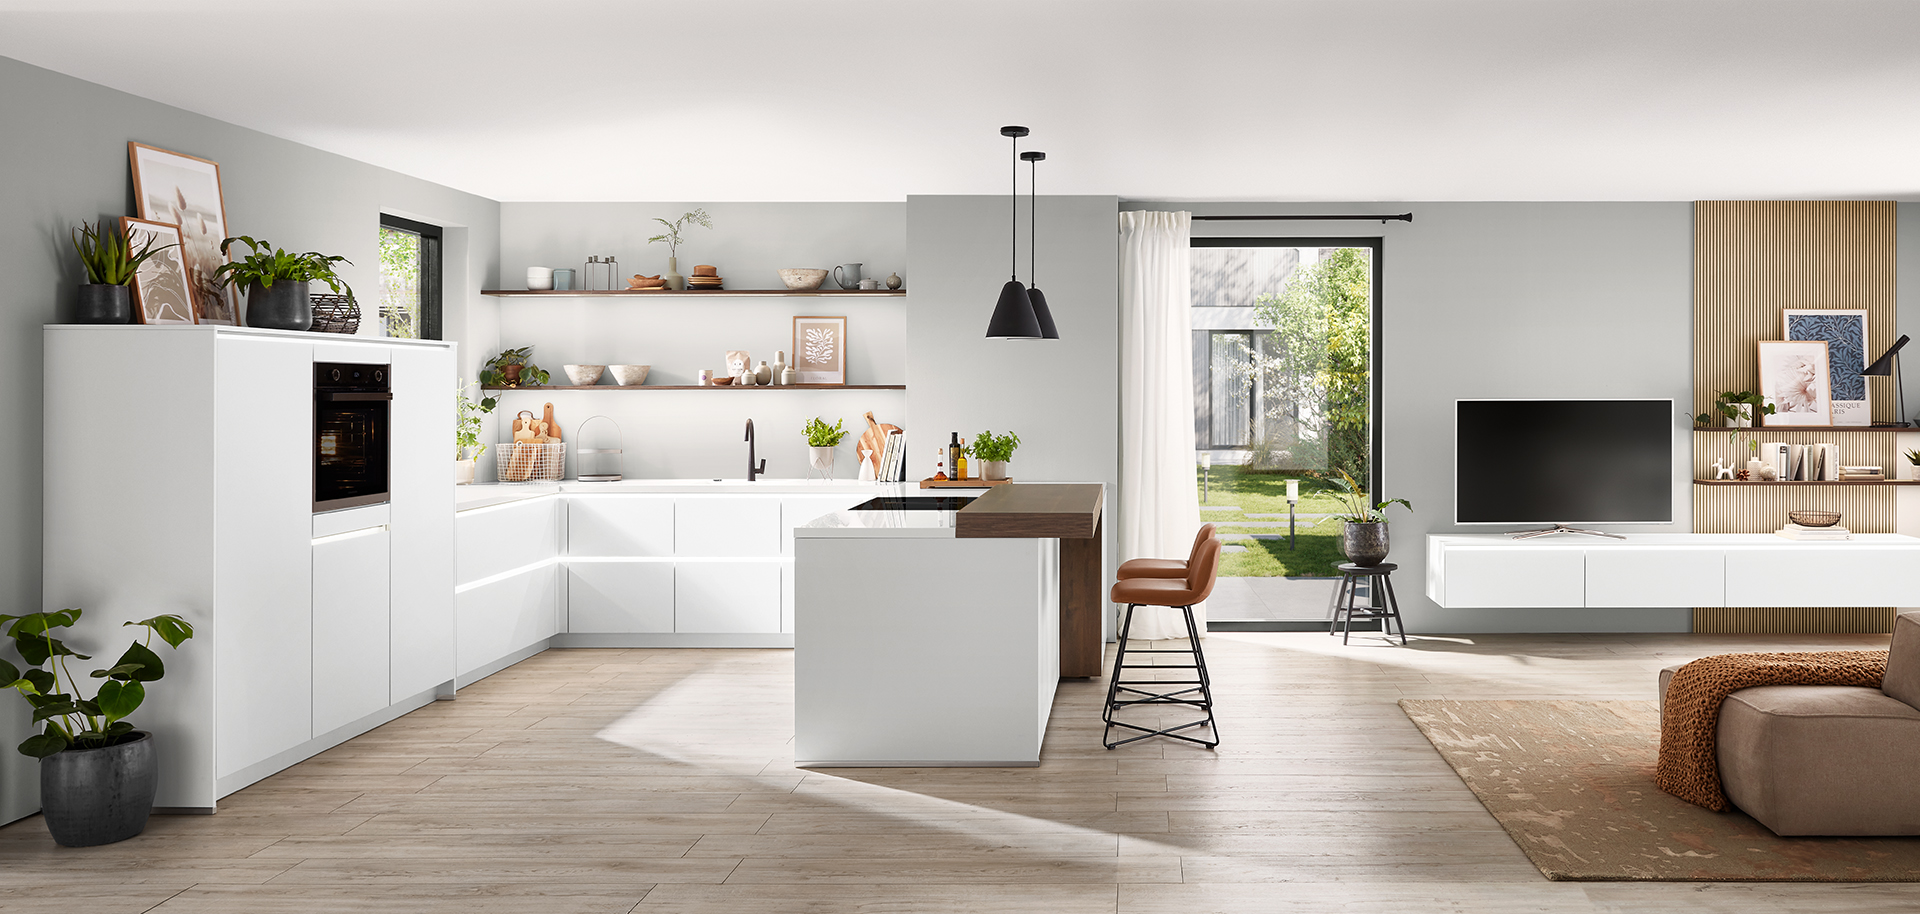 Cucina moderna con armadi bianchi si fonde in uno spazio living chic con accenti in legno, mettendo in mostra un design d'interni contemporaneo e senza soluzione di continuità.